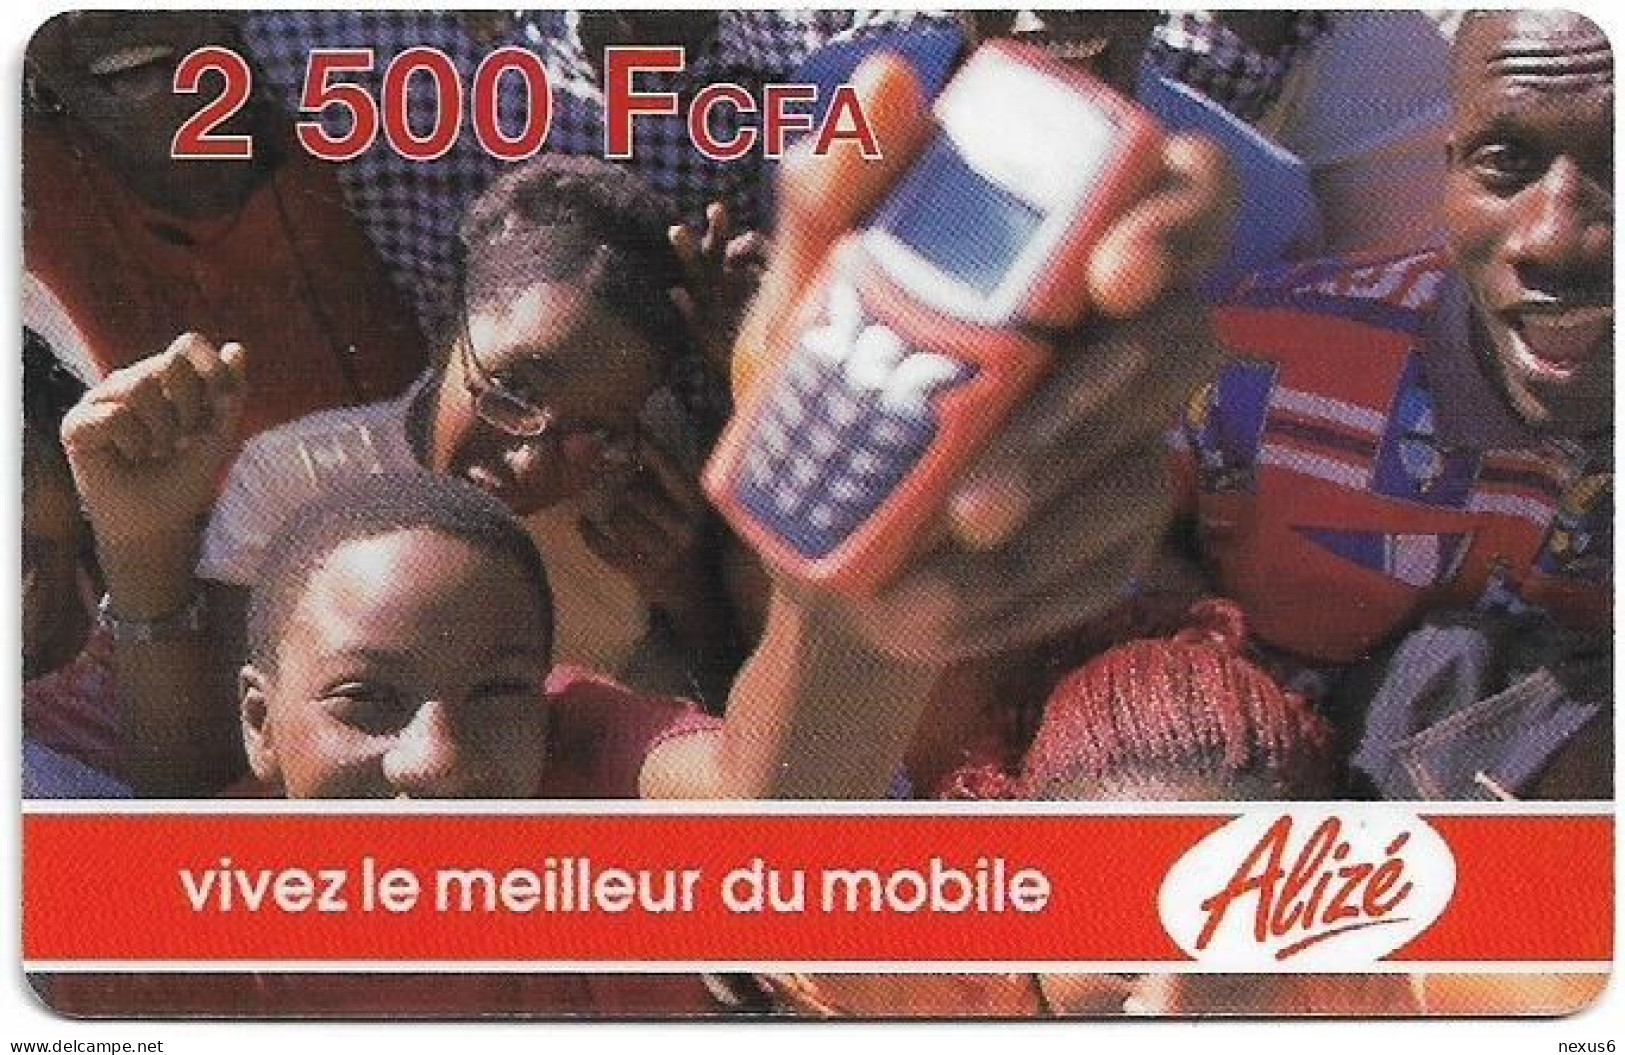 Senegal - Alizé - Vivez Le Meilleur Du Mobile - Crowd And Mobile, Reverse 3, GSM Refill 2.500CFA, Used - Senegal